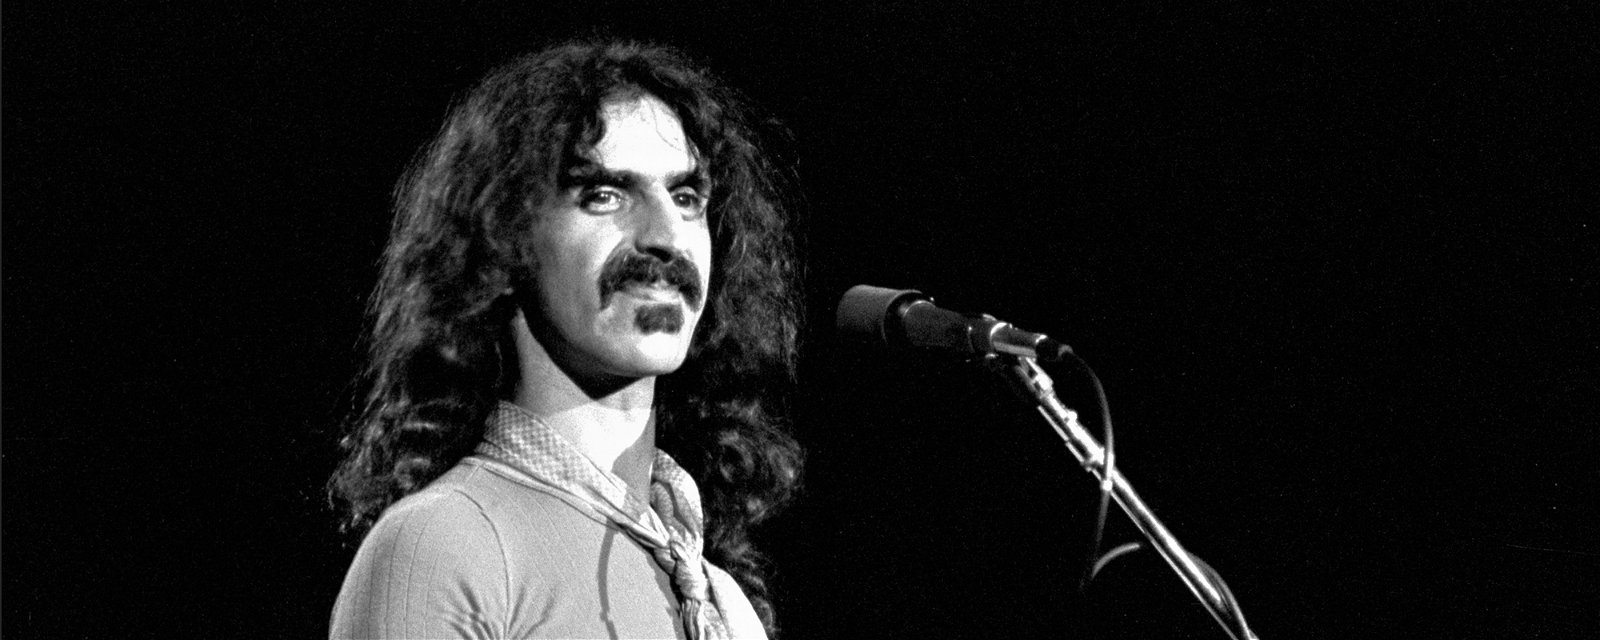 "Over-Nite Sensation" de Frank Zappa fête ses 50 ans avec la sortie "Deluxe"